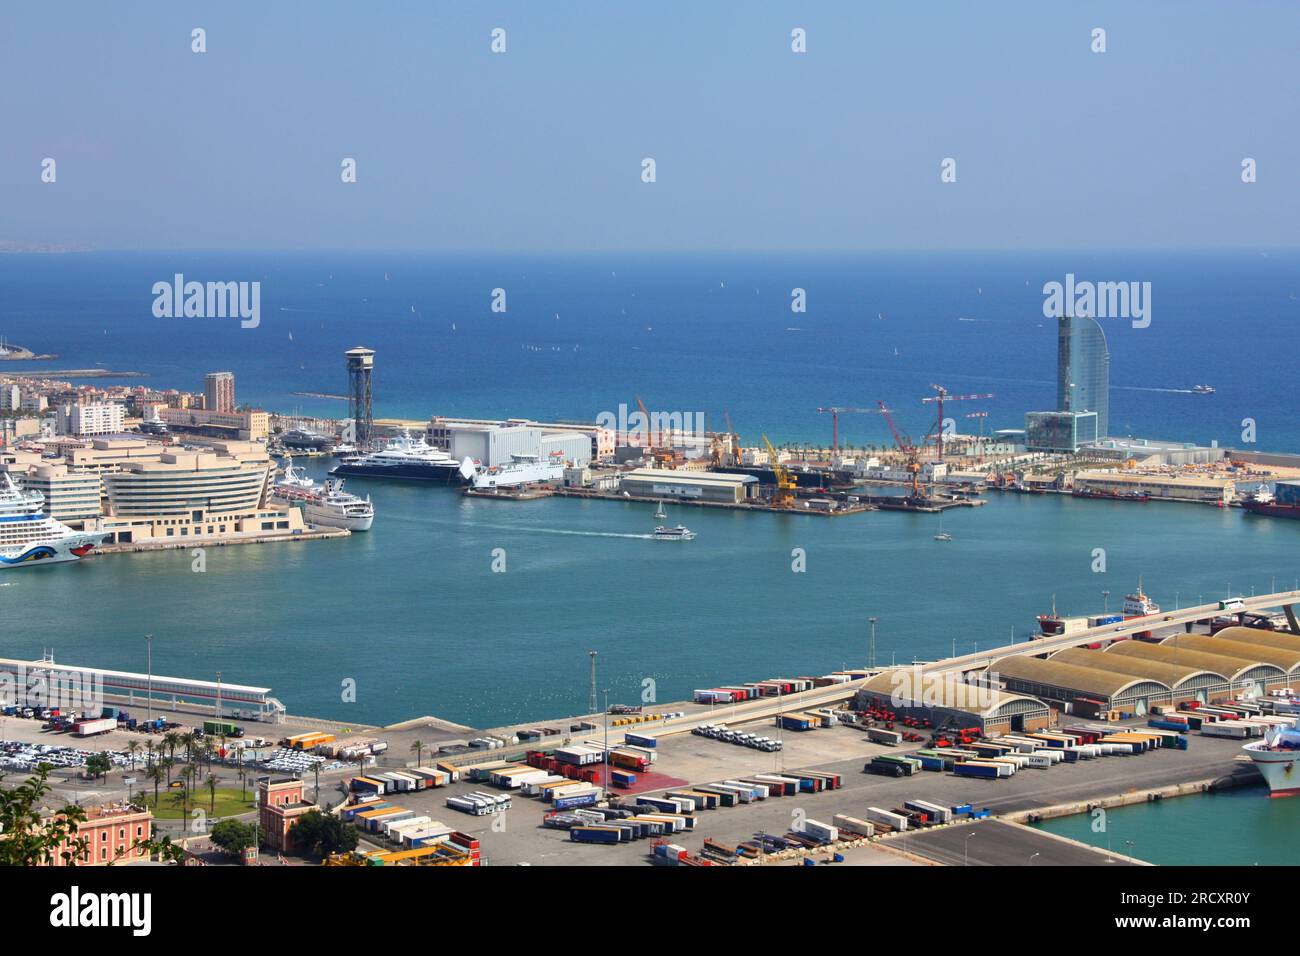 BARCELONE, ESPAGNE - 10 SEPTEMBRE 2009 : Port de Barcelone, deuxième plus grande ville d'Espagne. Le port de Barcelone est l'un des 10 ports à conteneurs les plus fréquentés d'Europe Banque D'Images